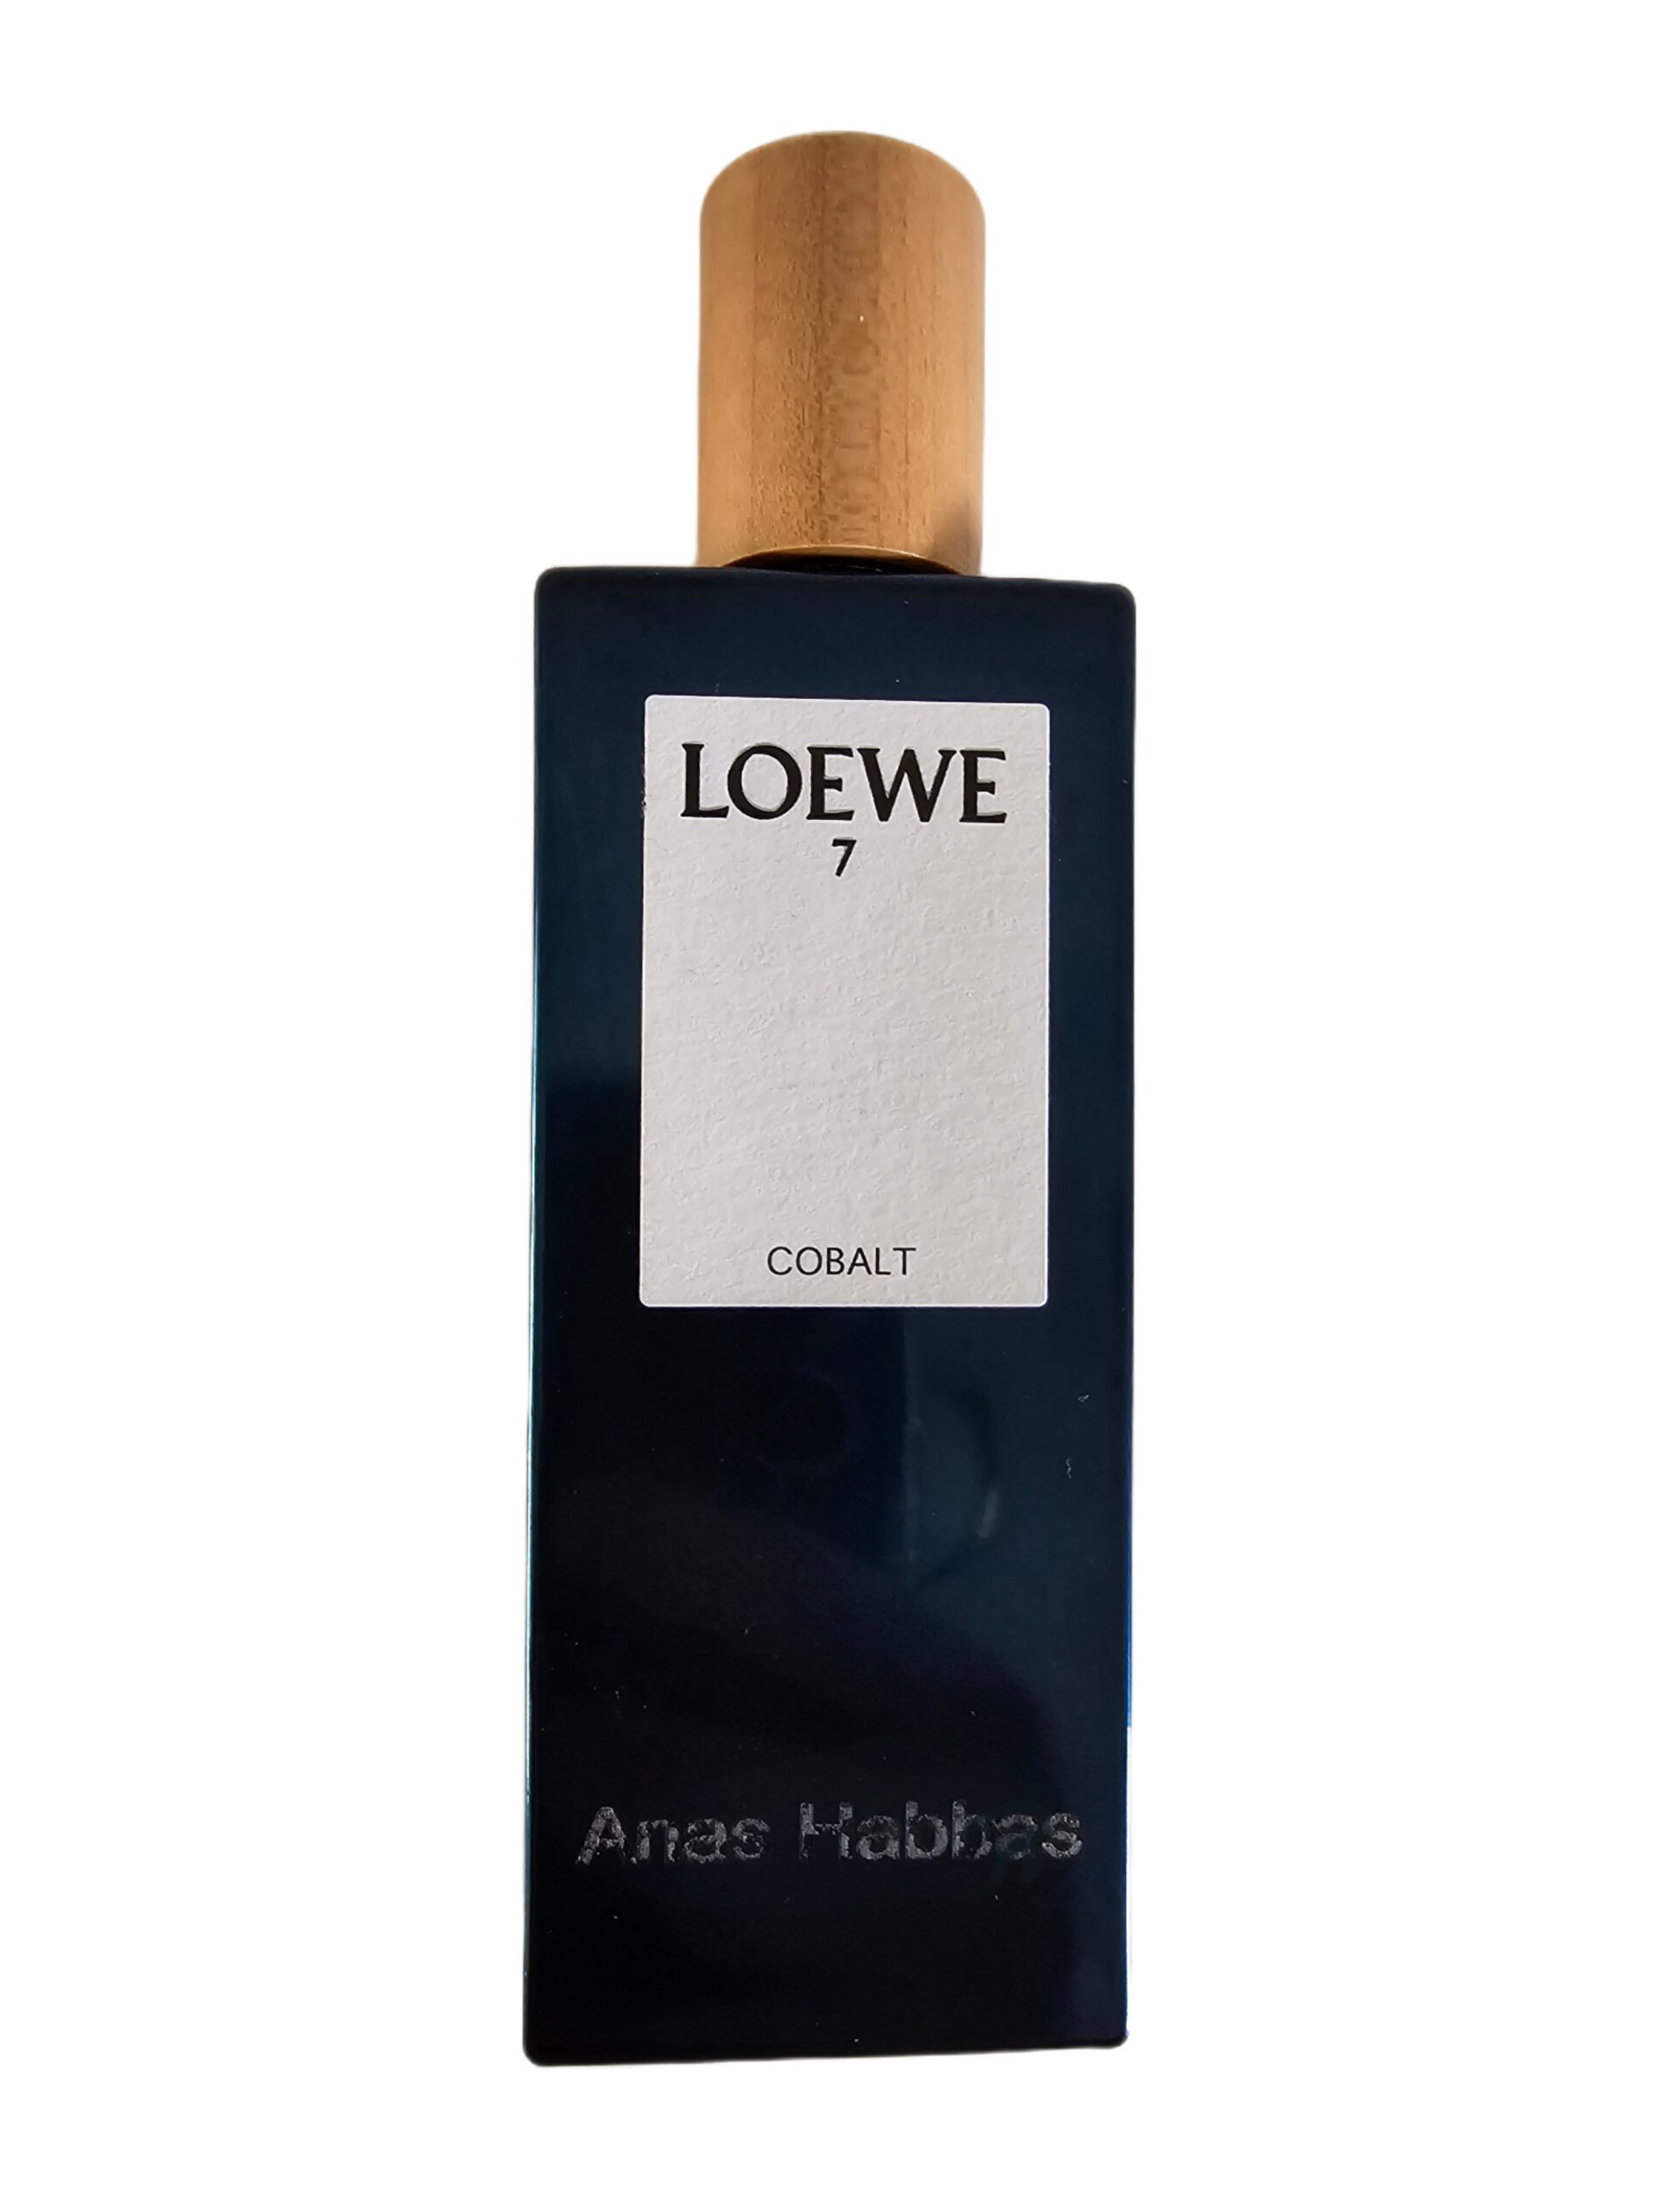 Loewe Cobalt 7